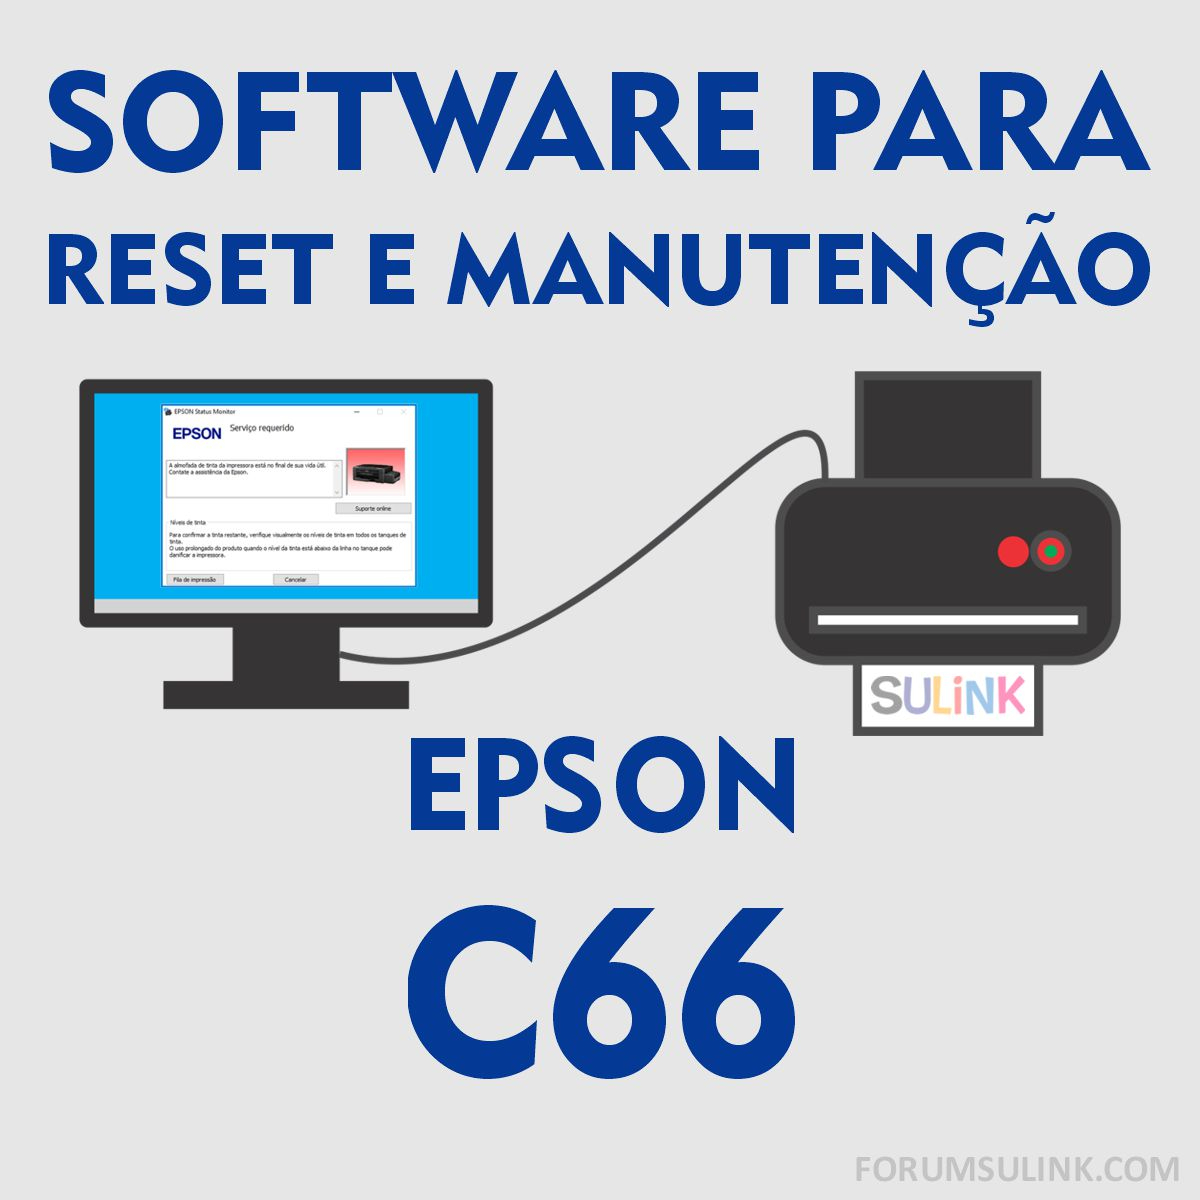 Epson C66 | Software para Reset das Almofadas e Manutenção